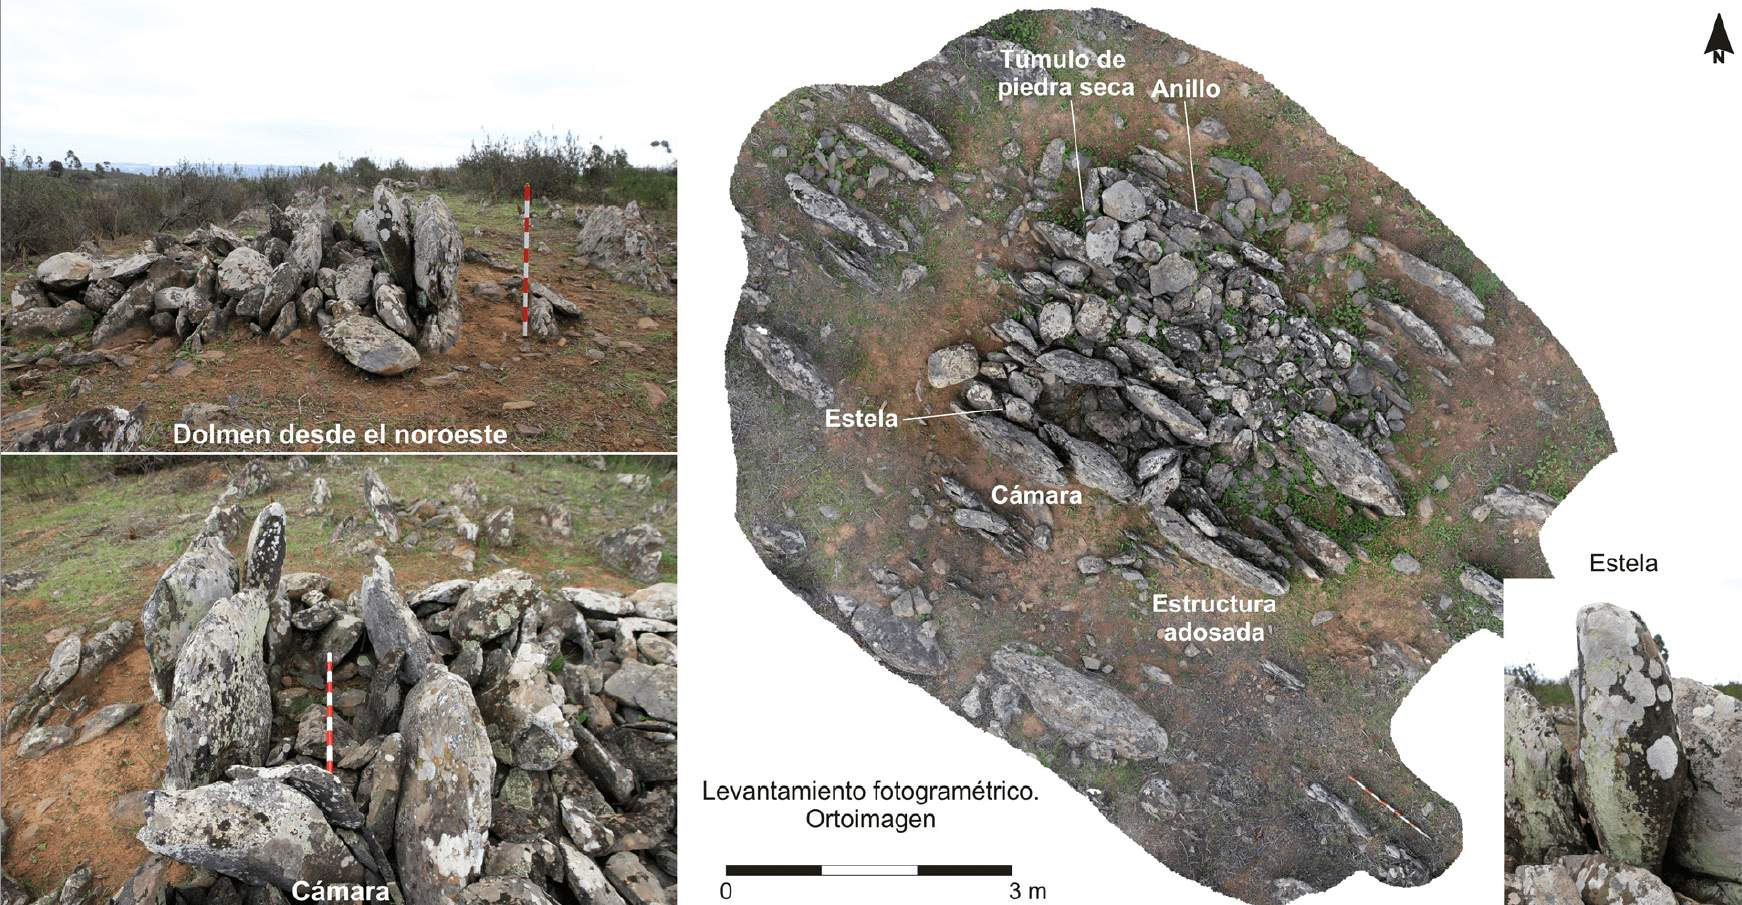 Khu phức hợp cự thạch khổng lồ từ 5000 năm trước Công nguyên được phát hiện ở Tây Ban Nha 4